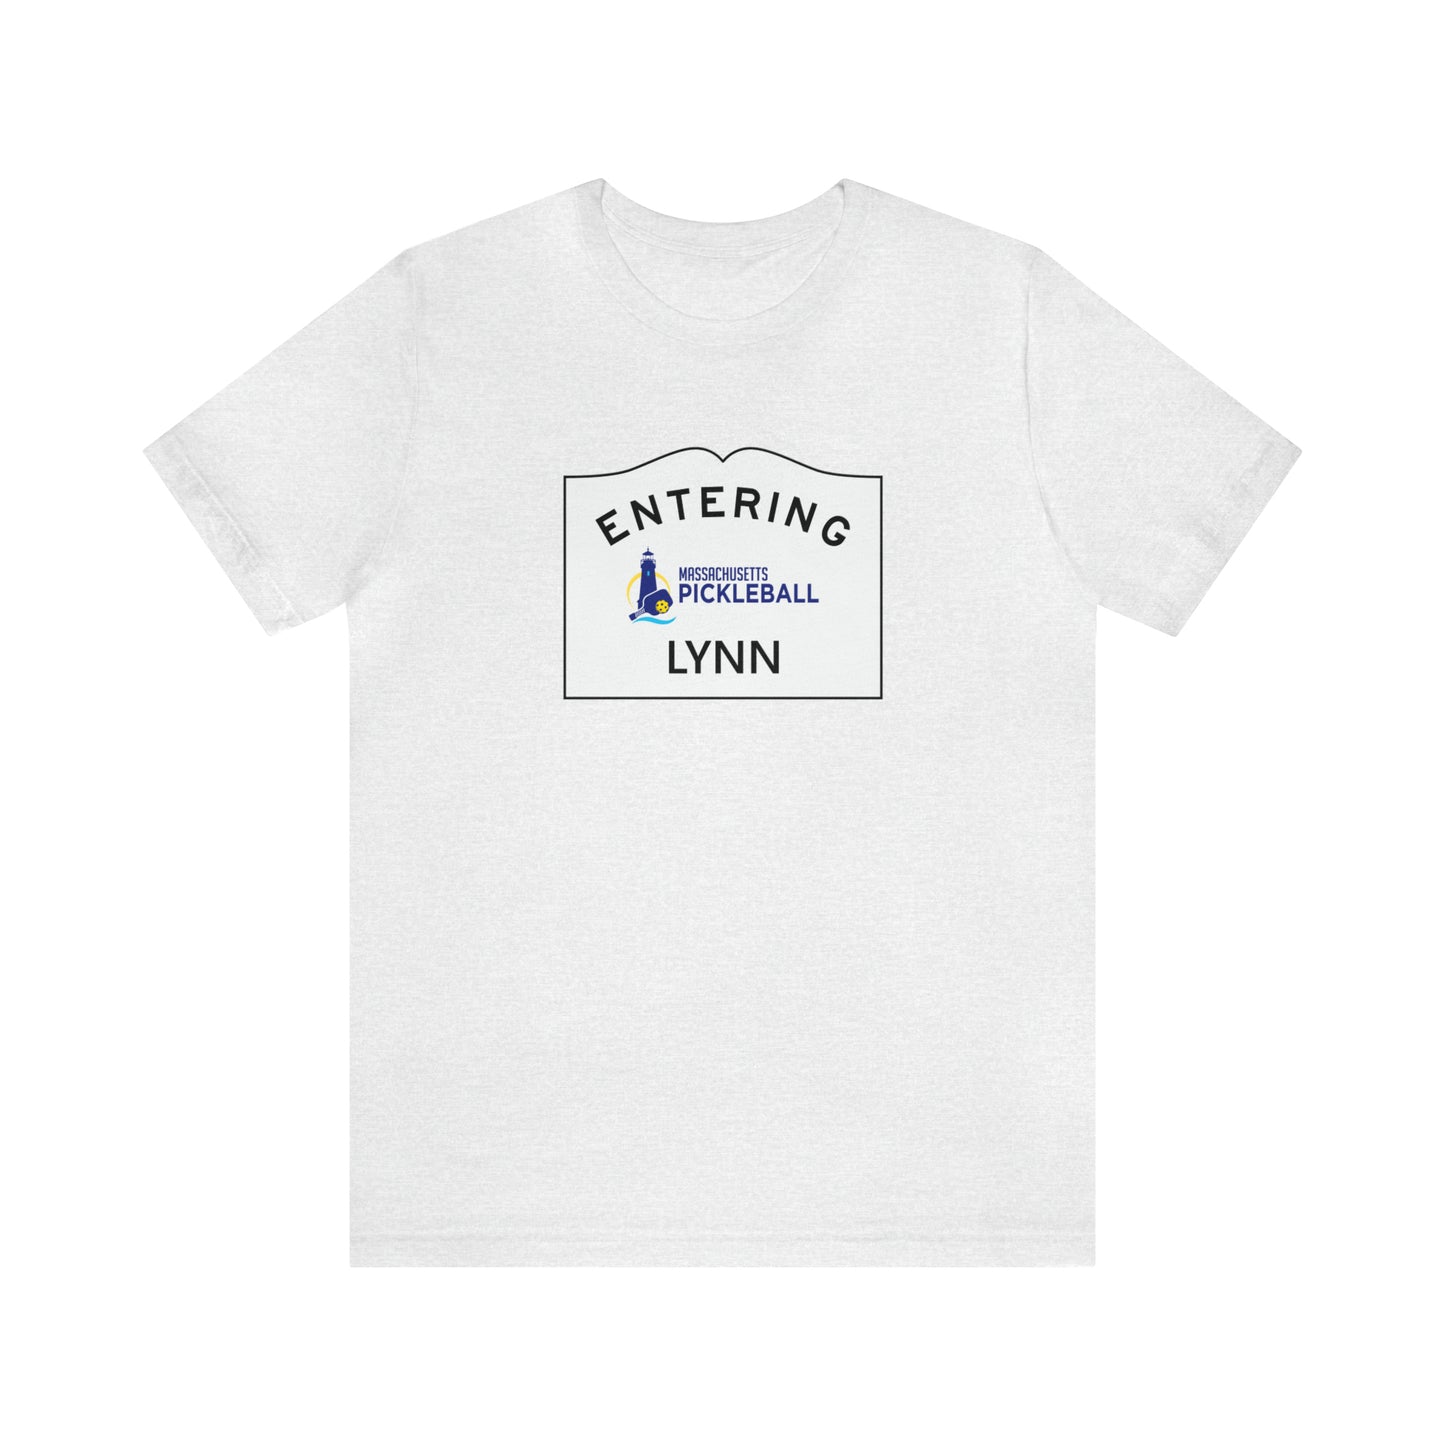 Lynn, Mass Pickleball Short Sleeve T-Shirt